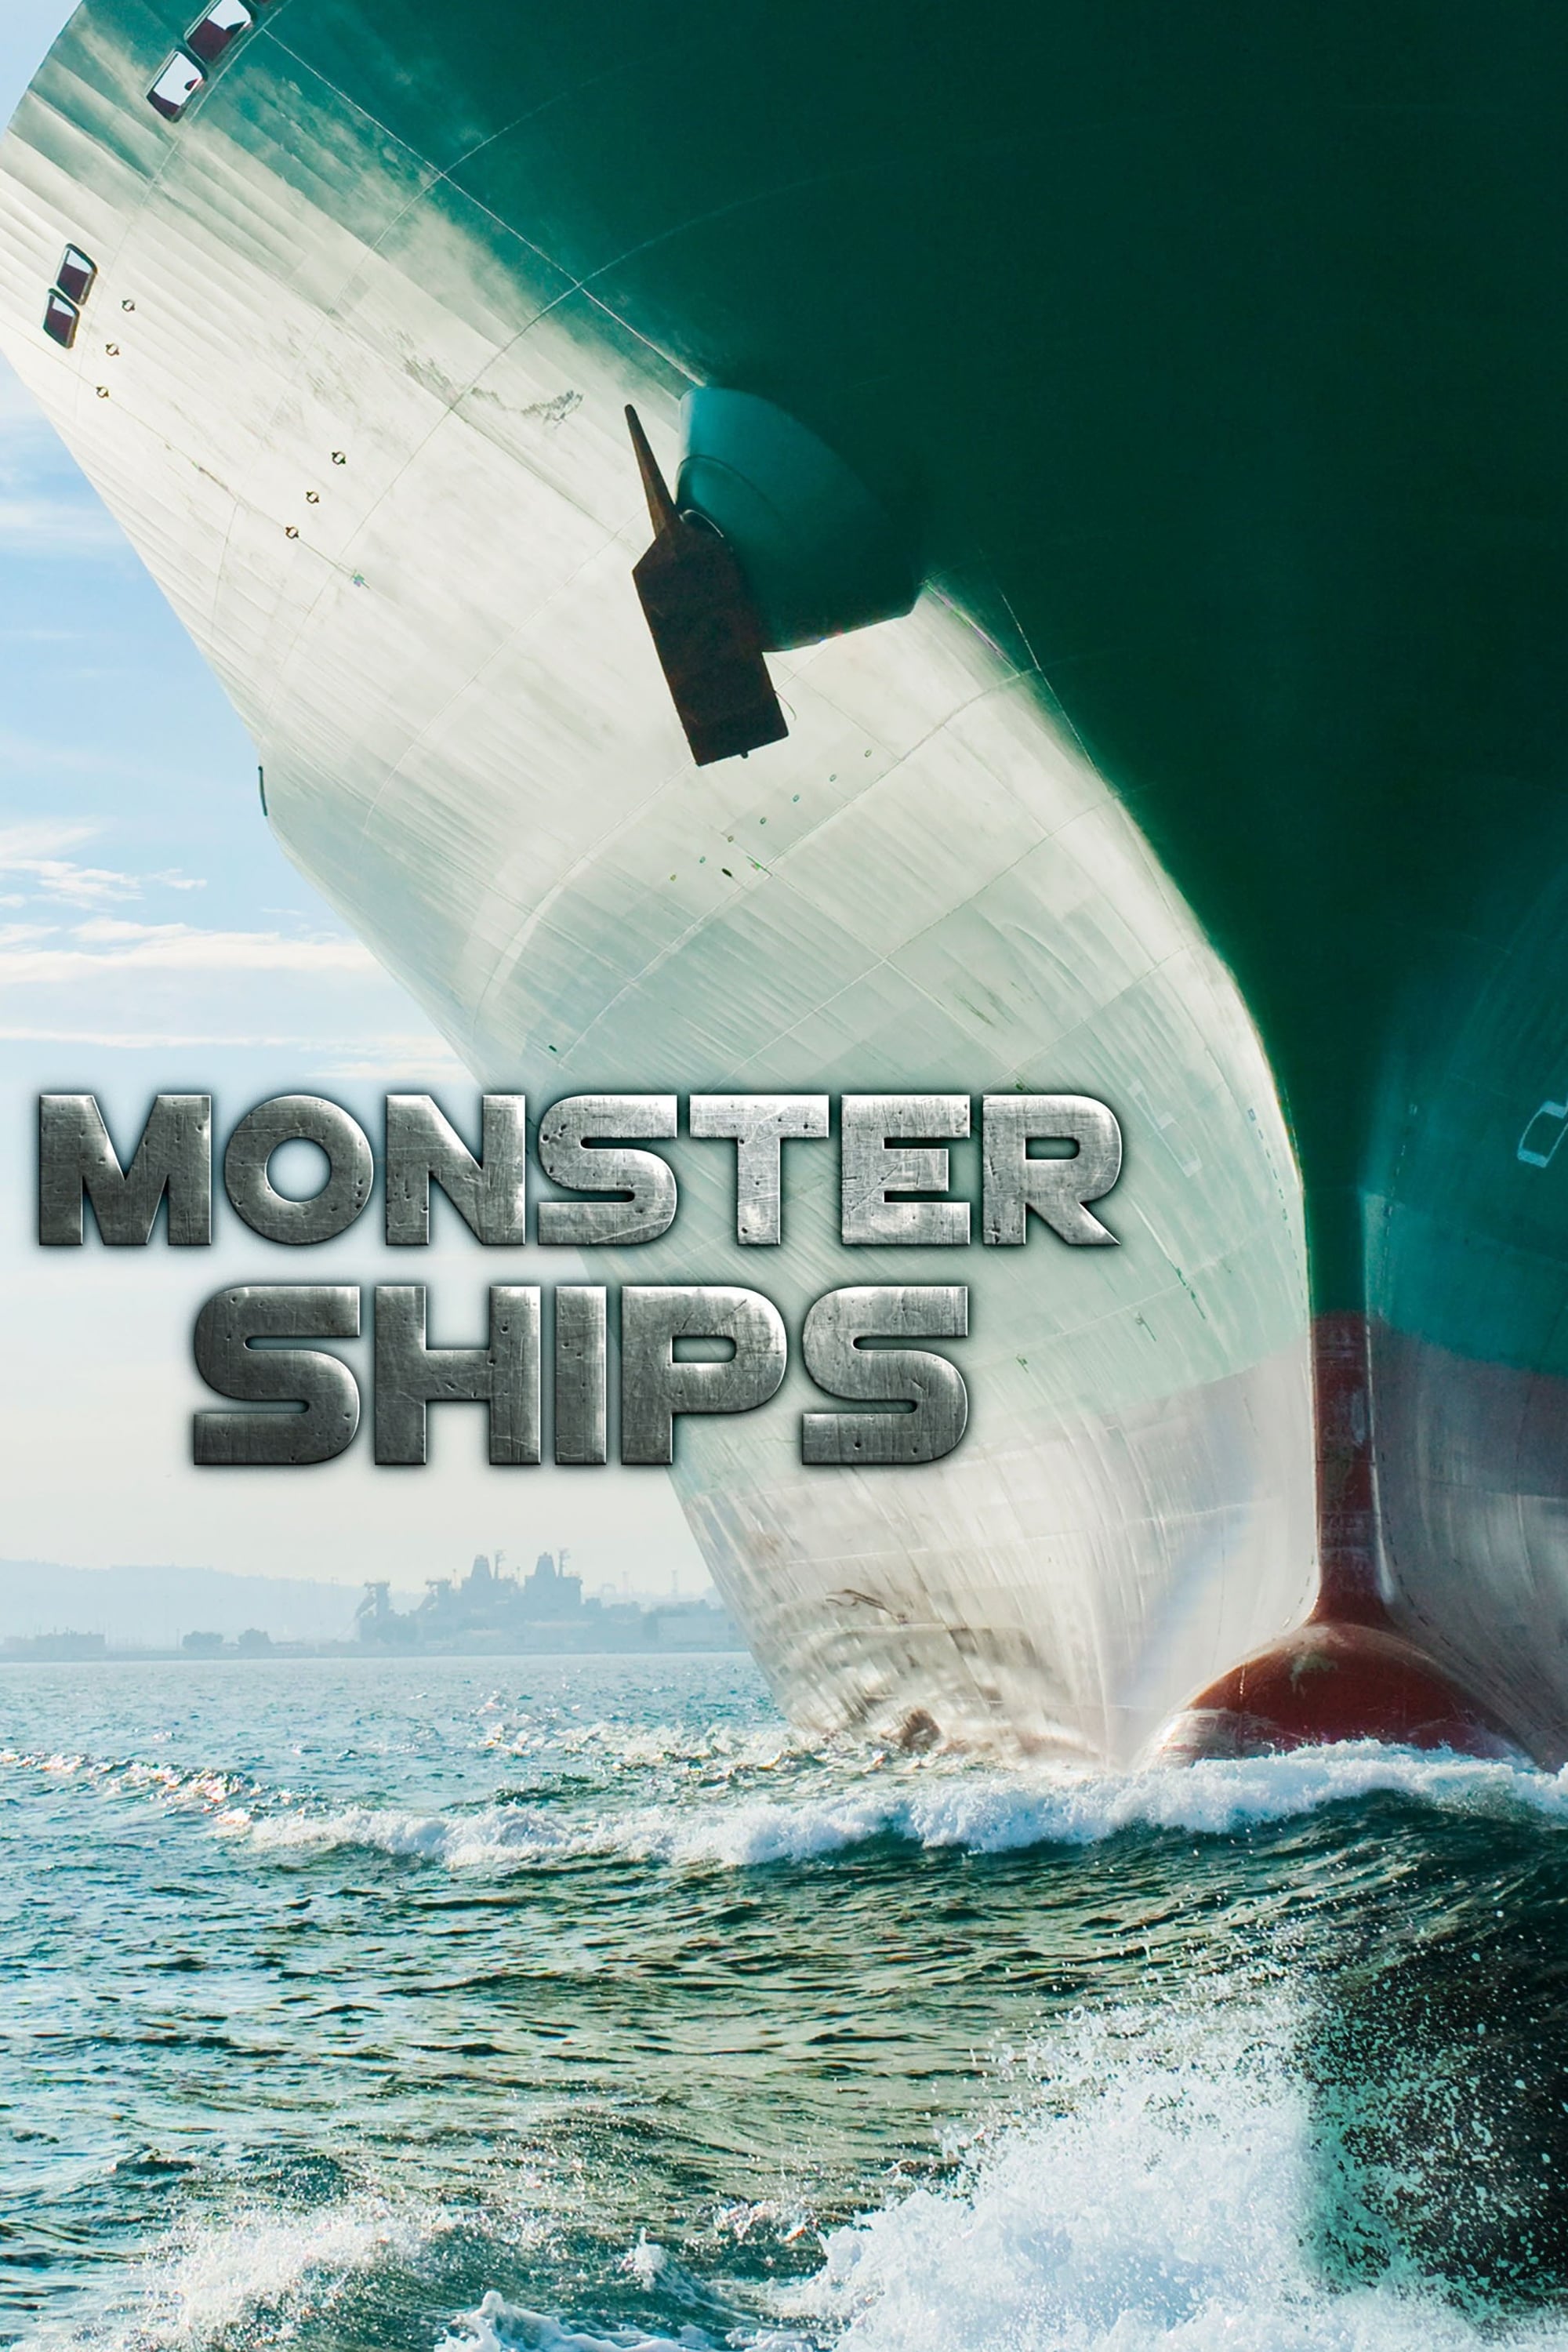 Monster Ships